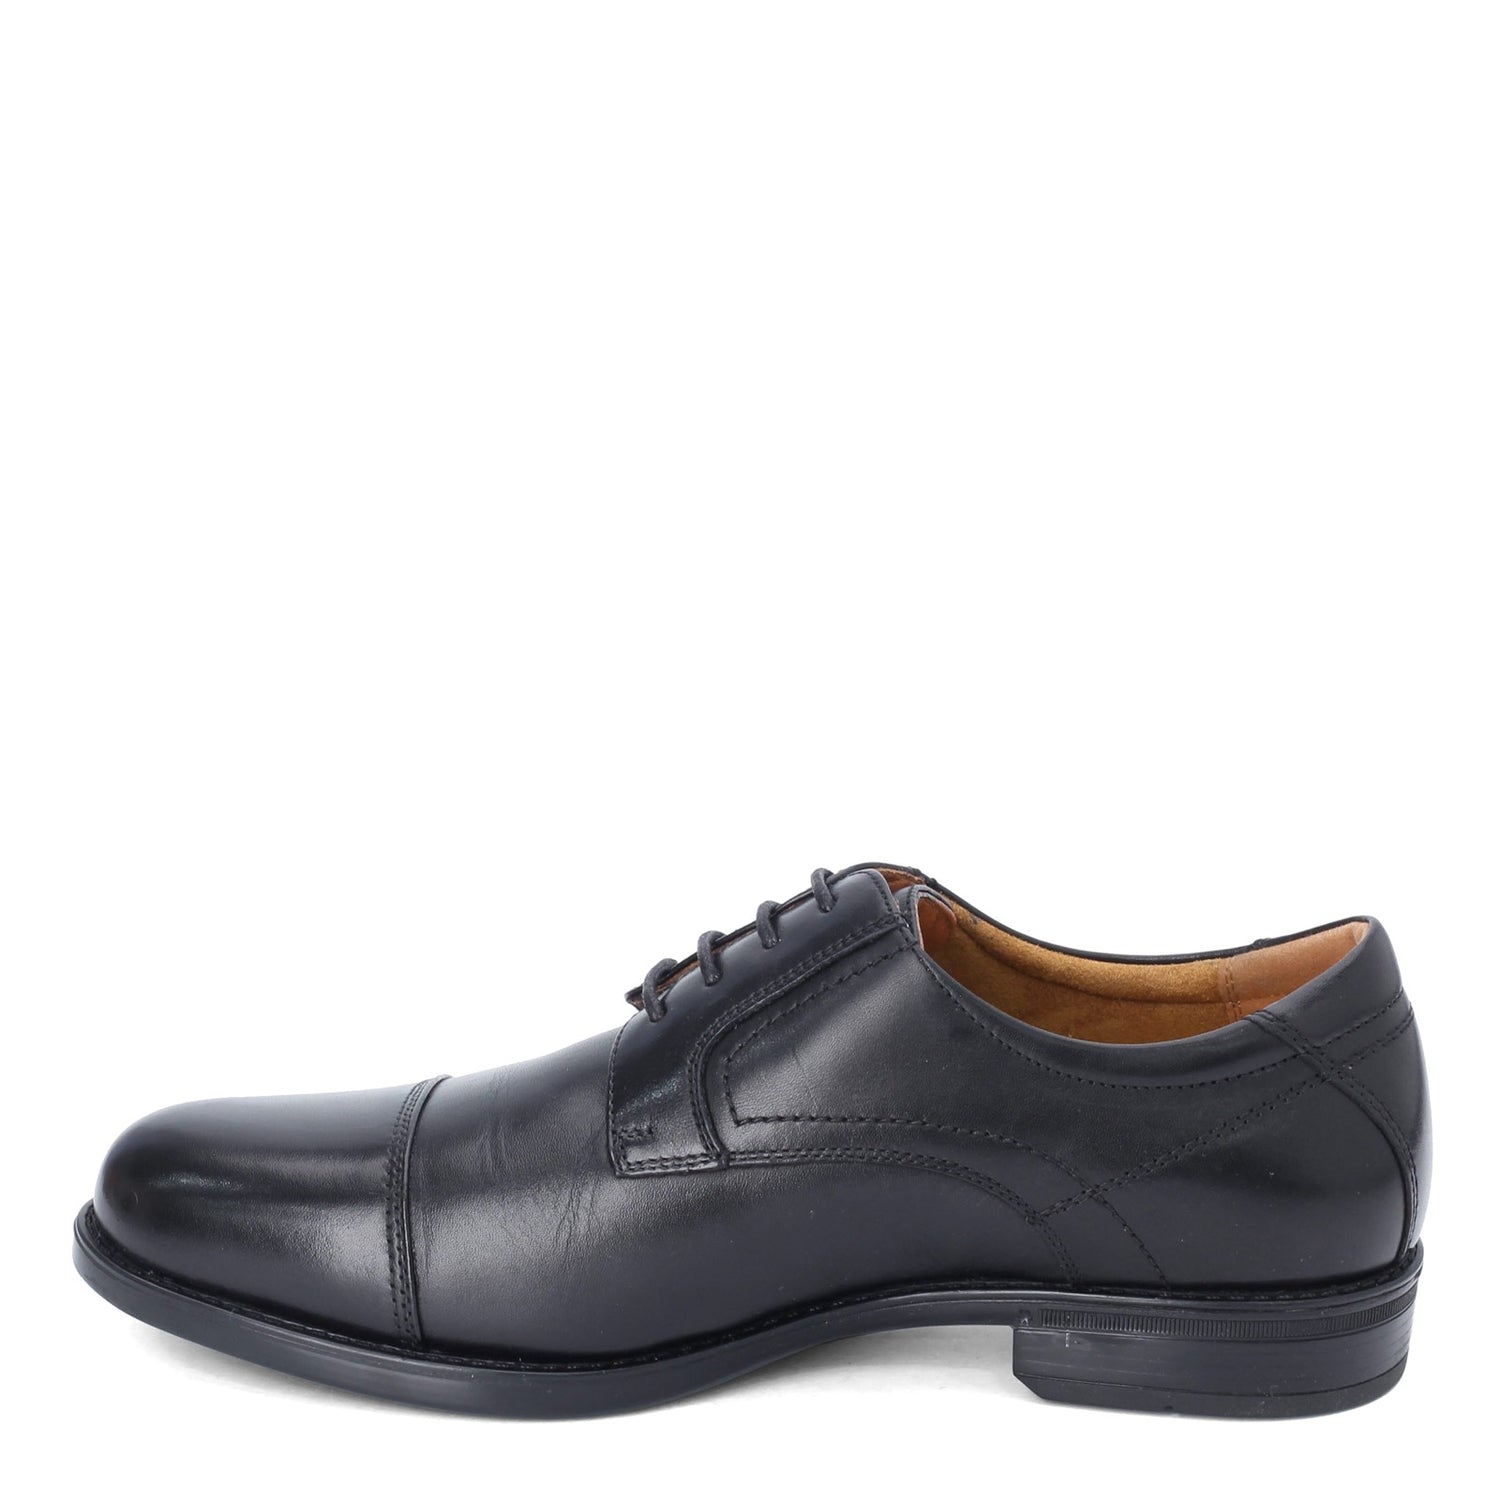 Peltz Shoes  Men's Florsheim Midtown Cap Toe Oxford BLACK 12138-001